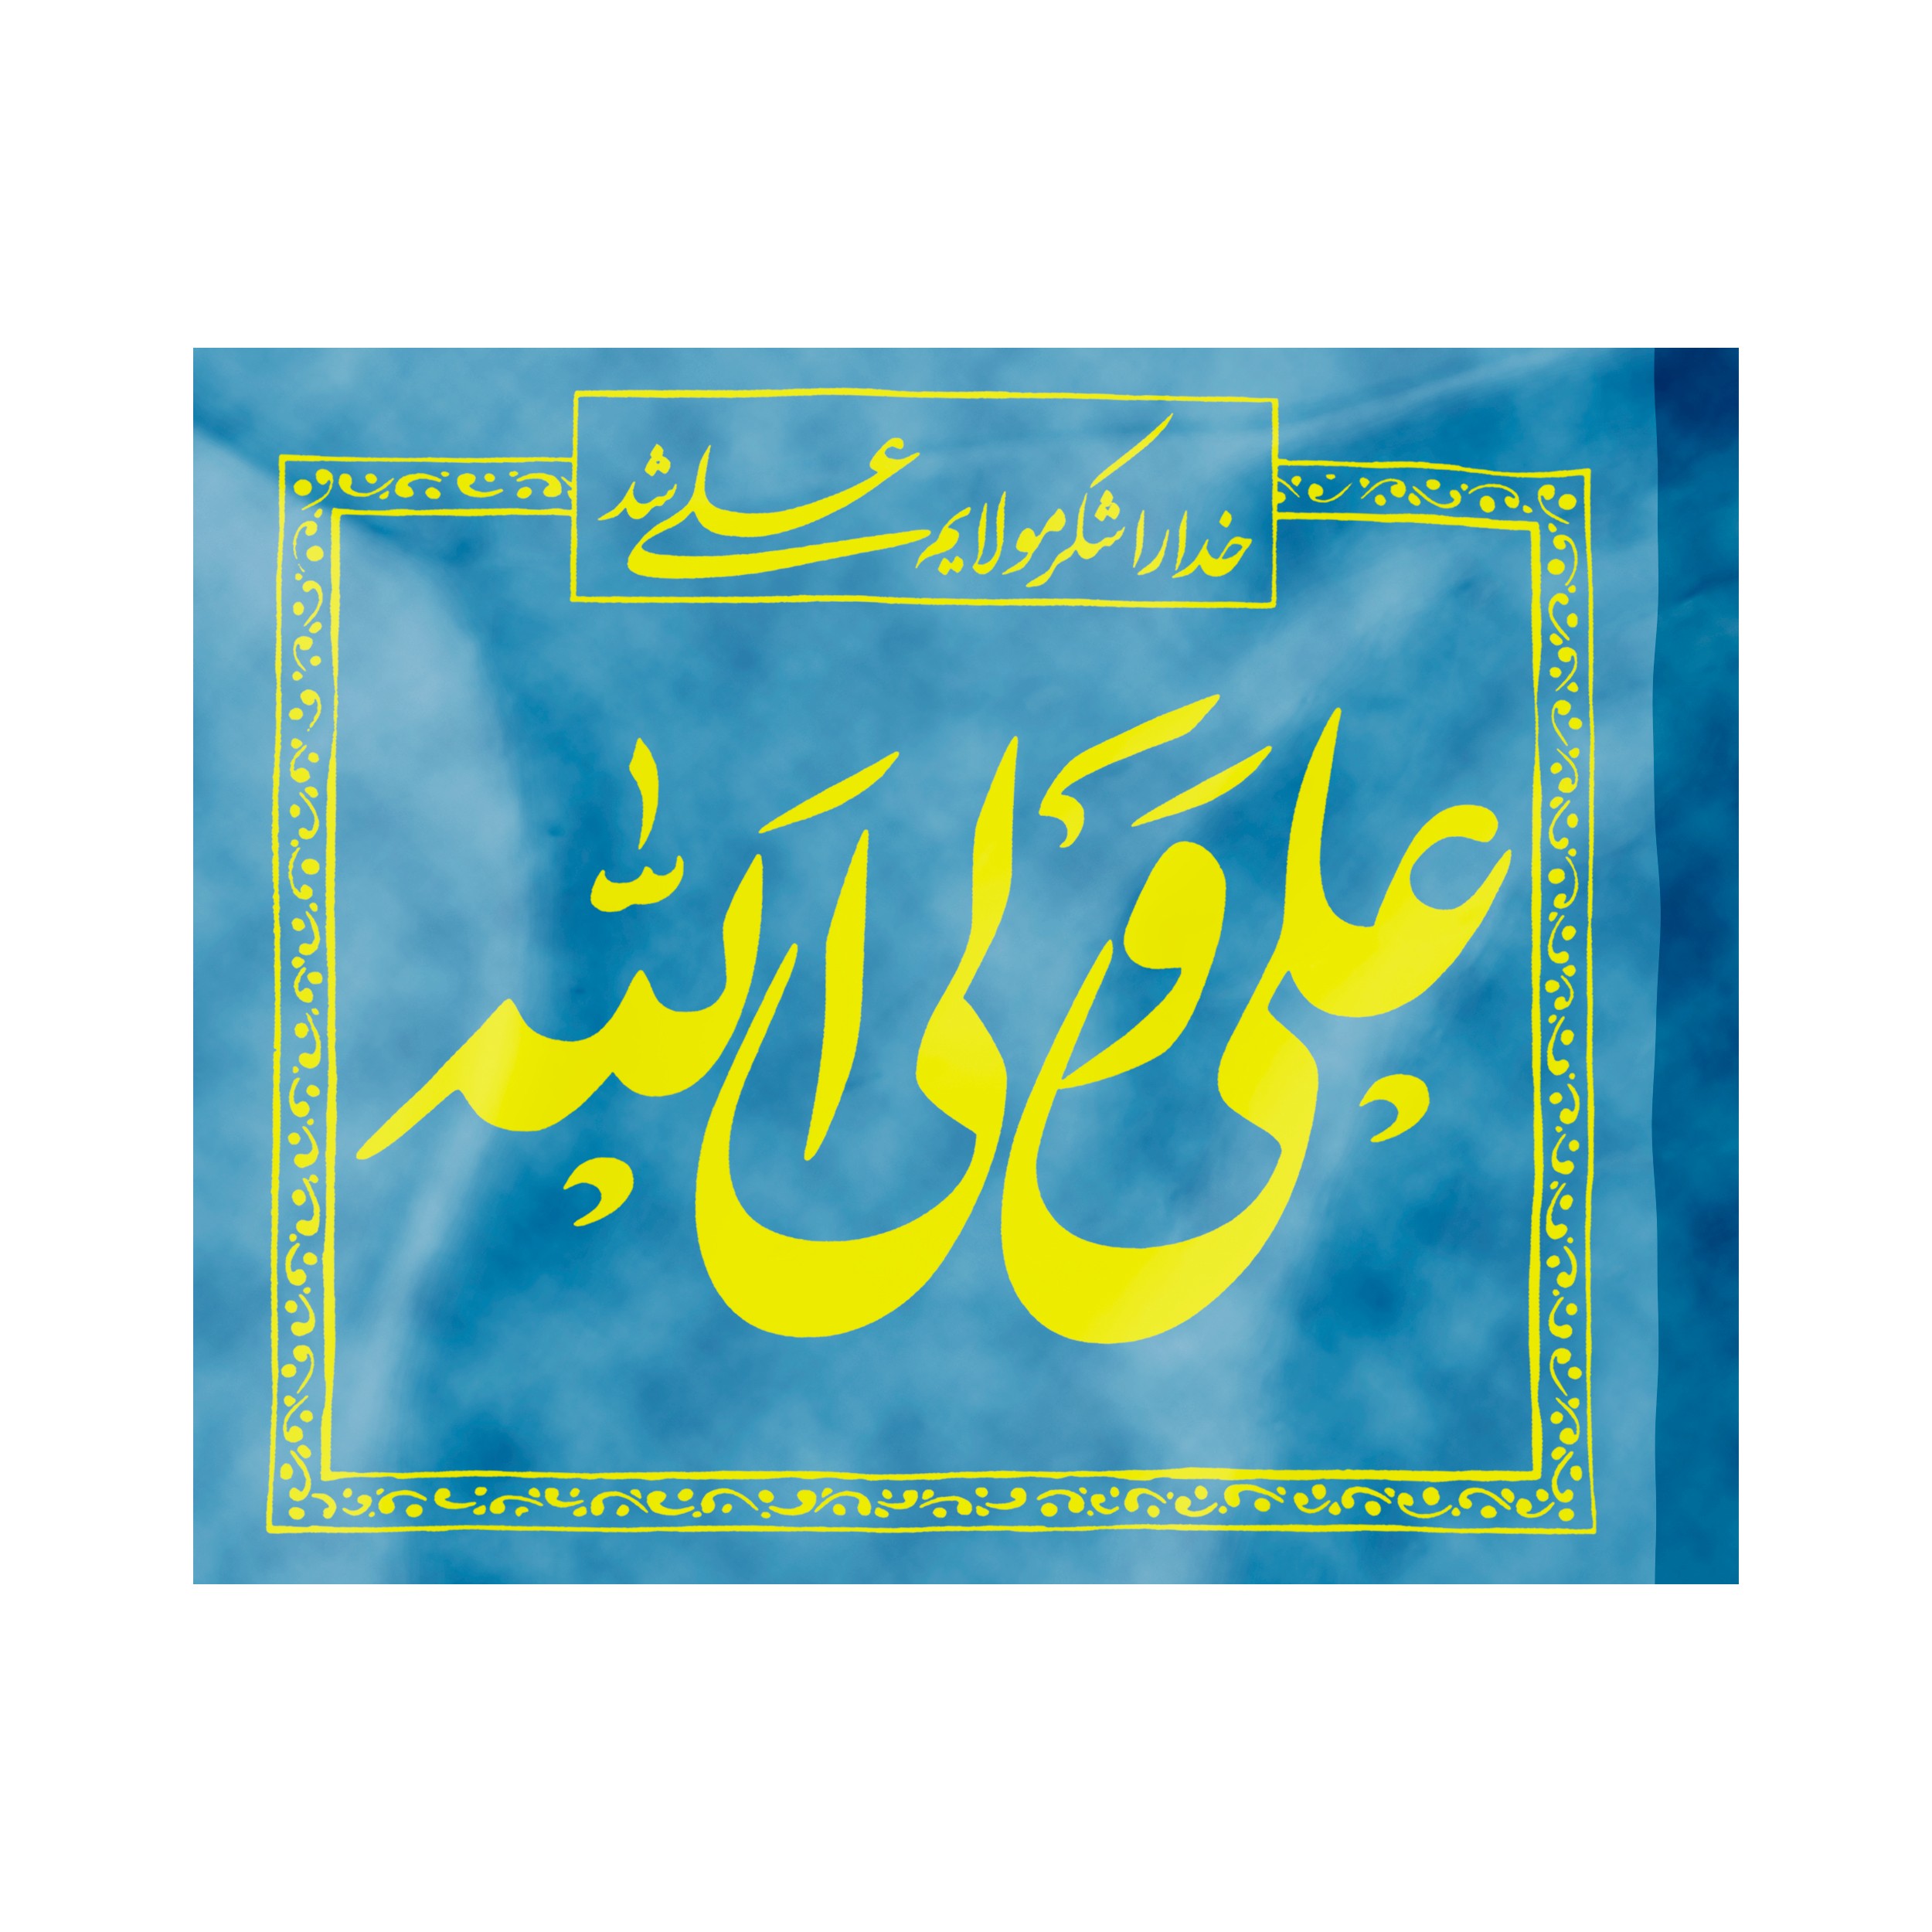 پرچم طرح مذهبی علی ولی الله کد 30001114